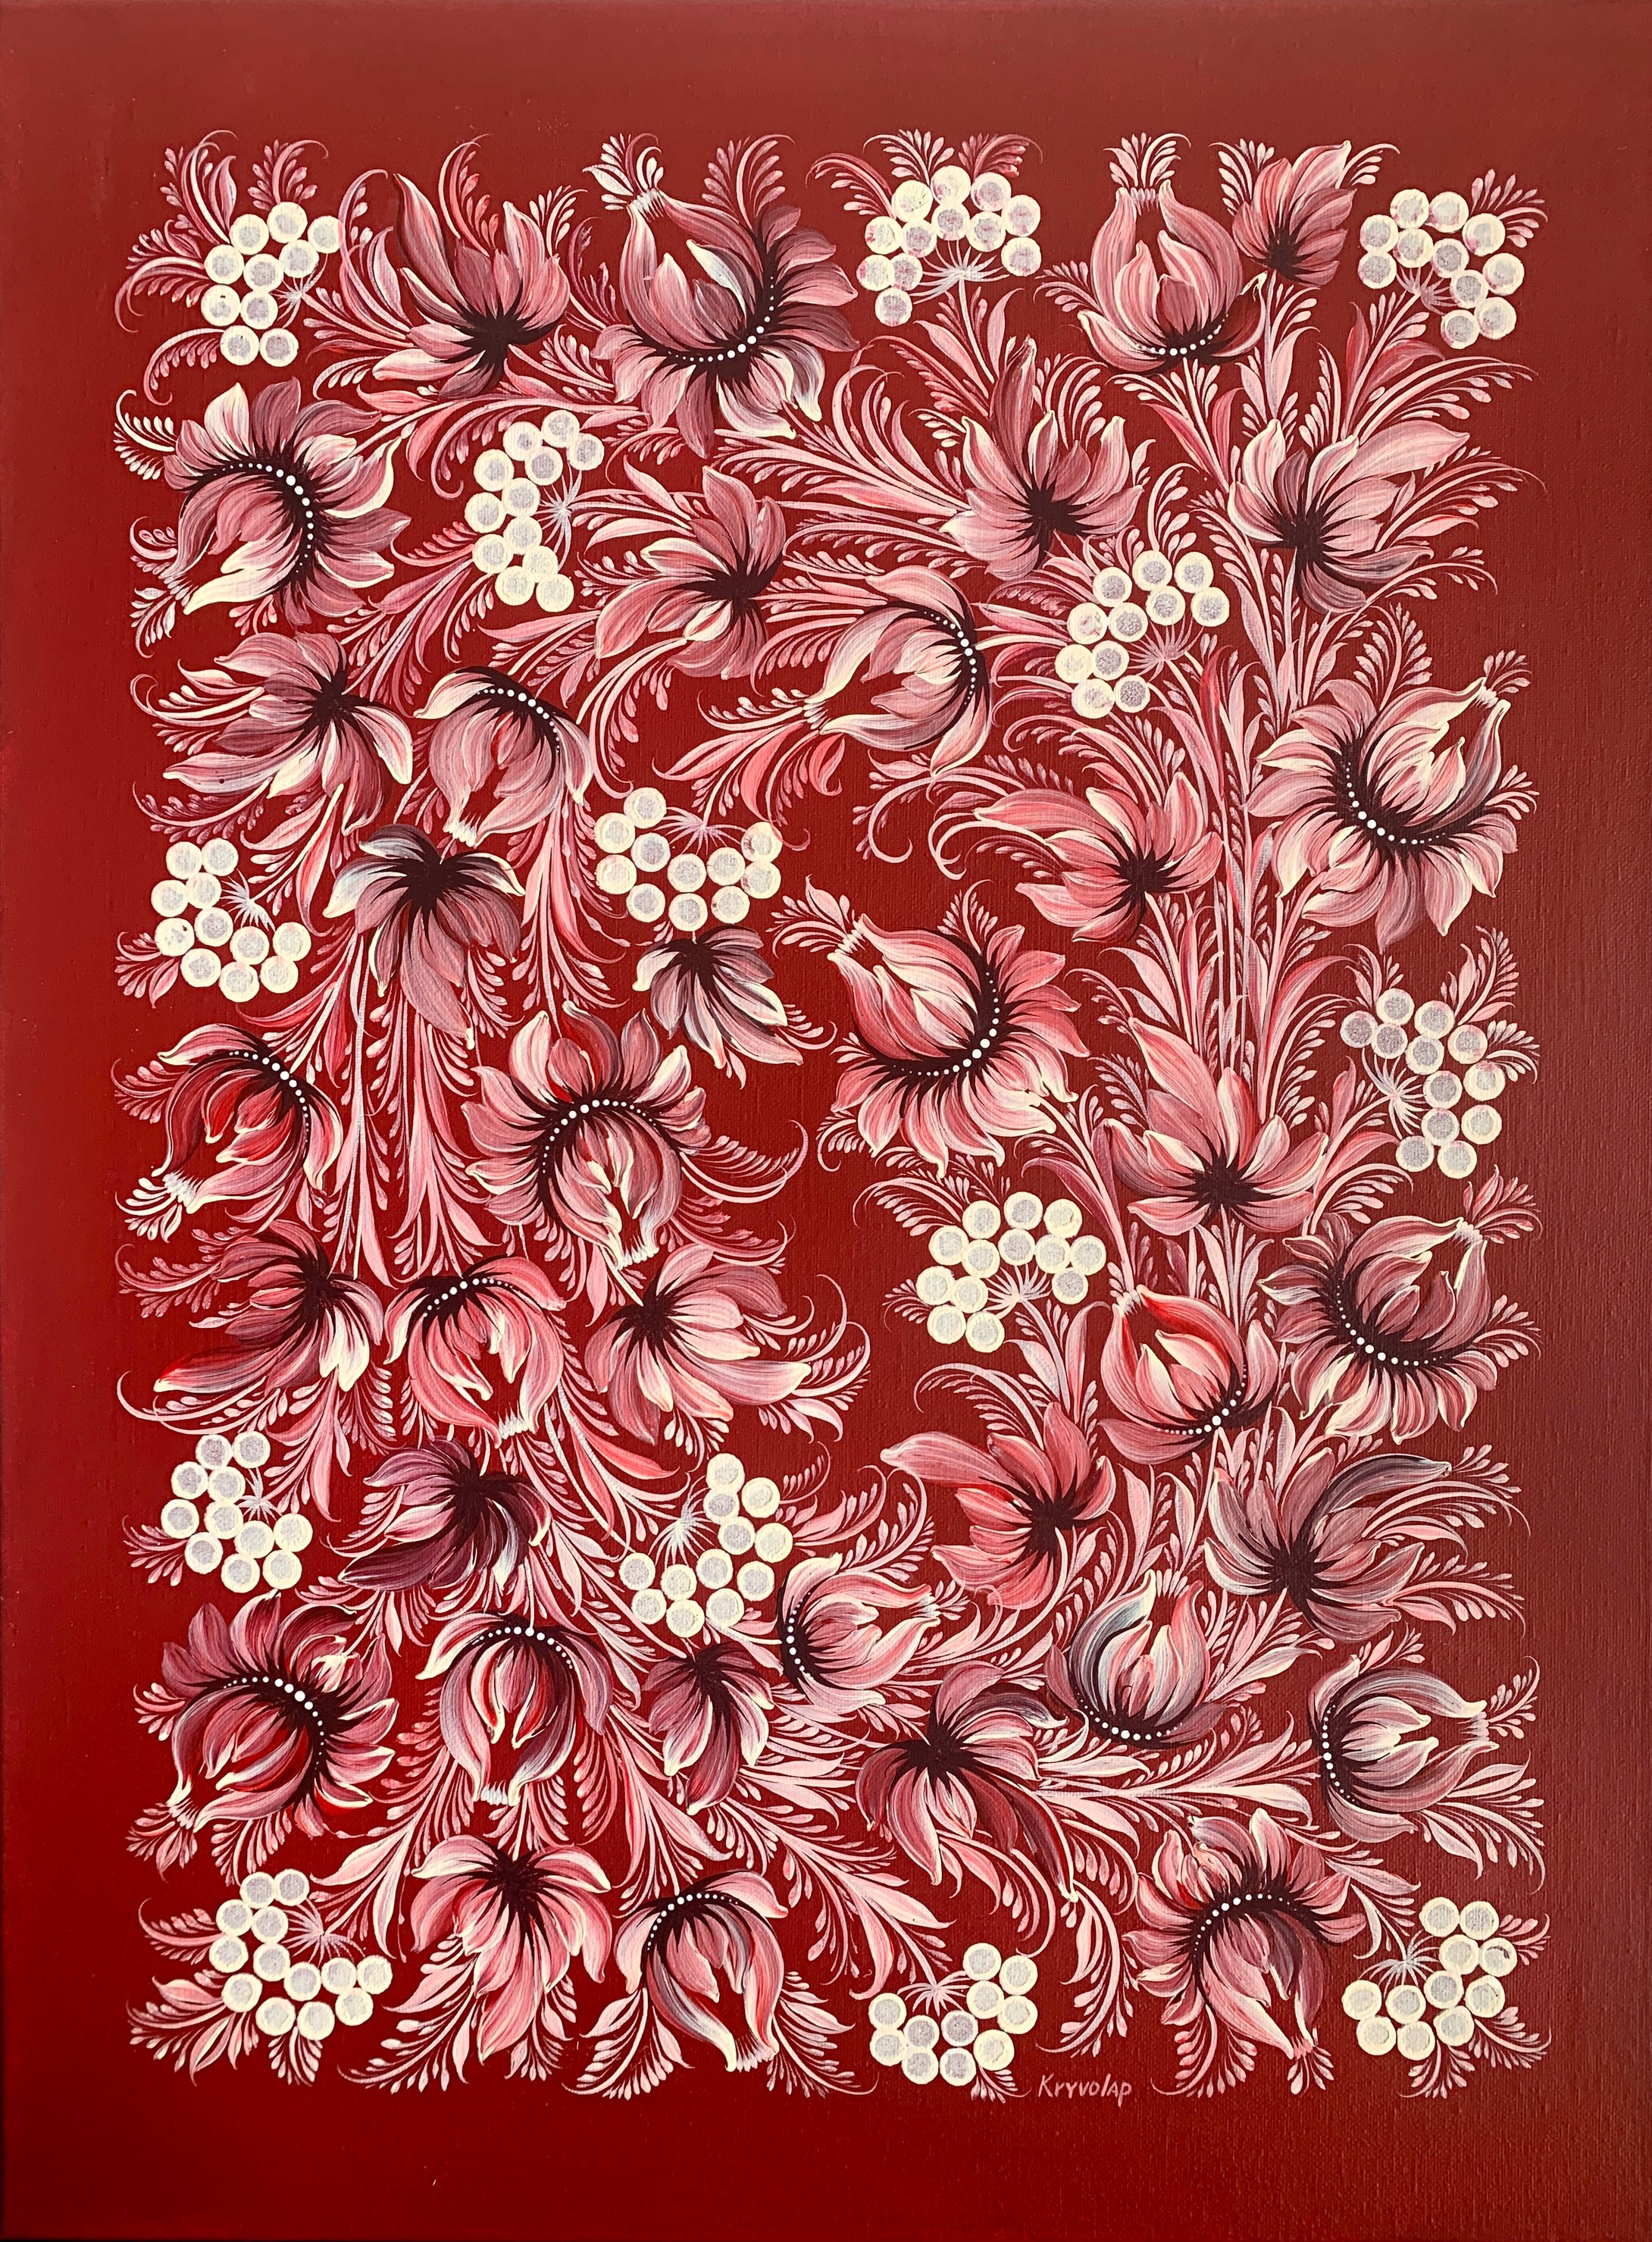 RED VELVET - 18 in x 24 in (45.7 cm x 61 cm)